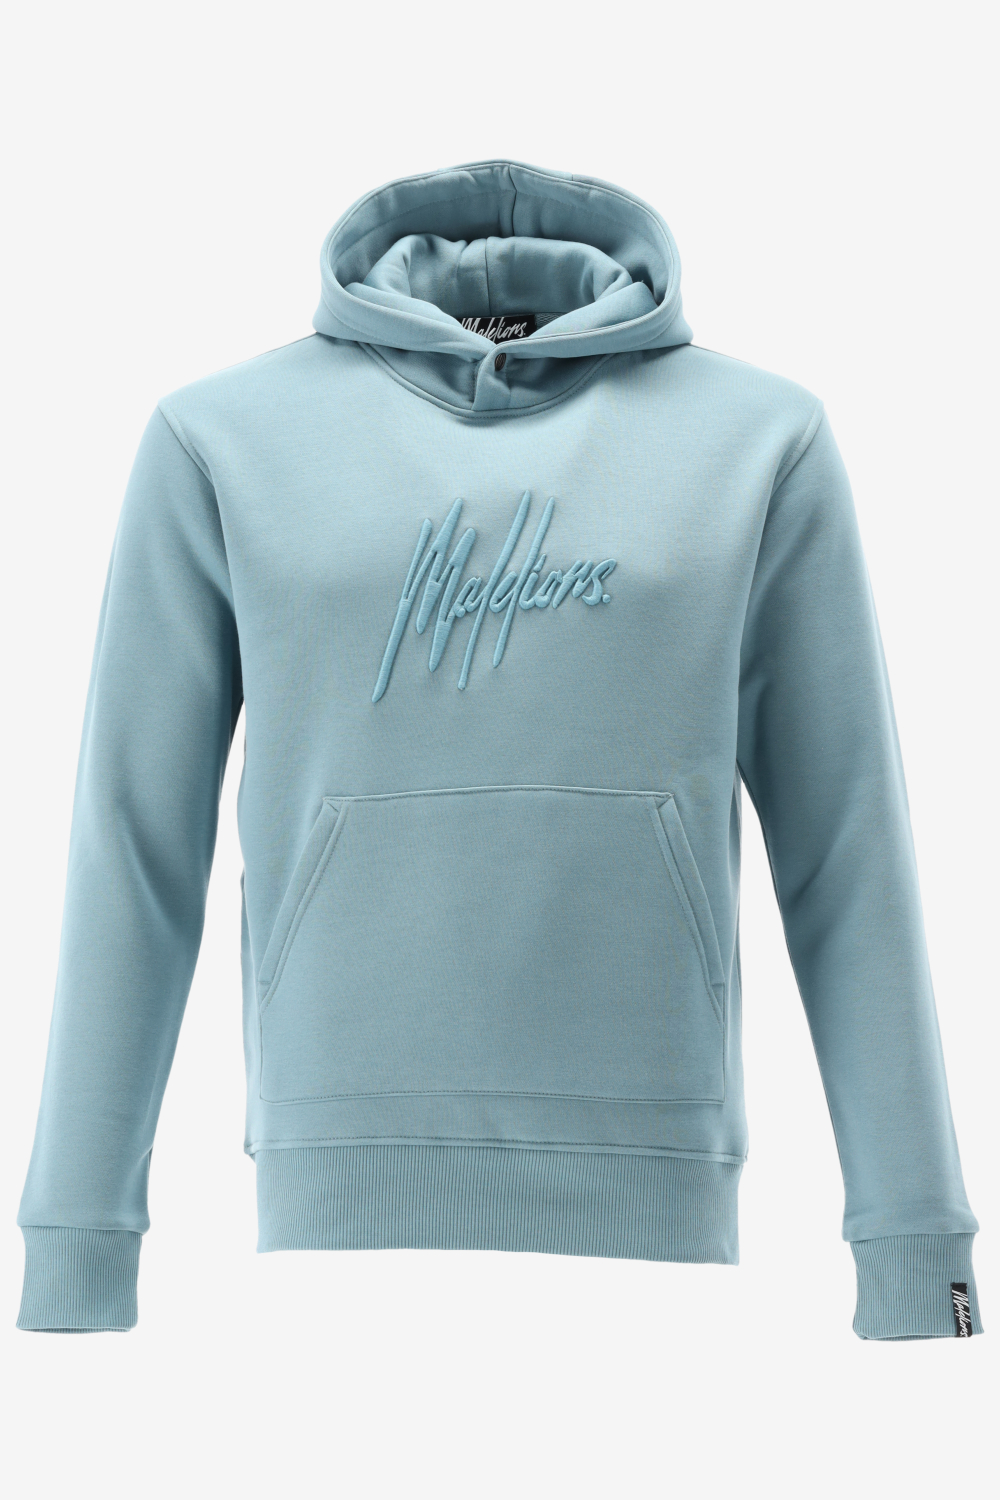 Malelions hoodie essentials hoodie maat XXL